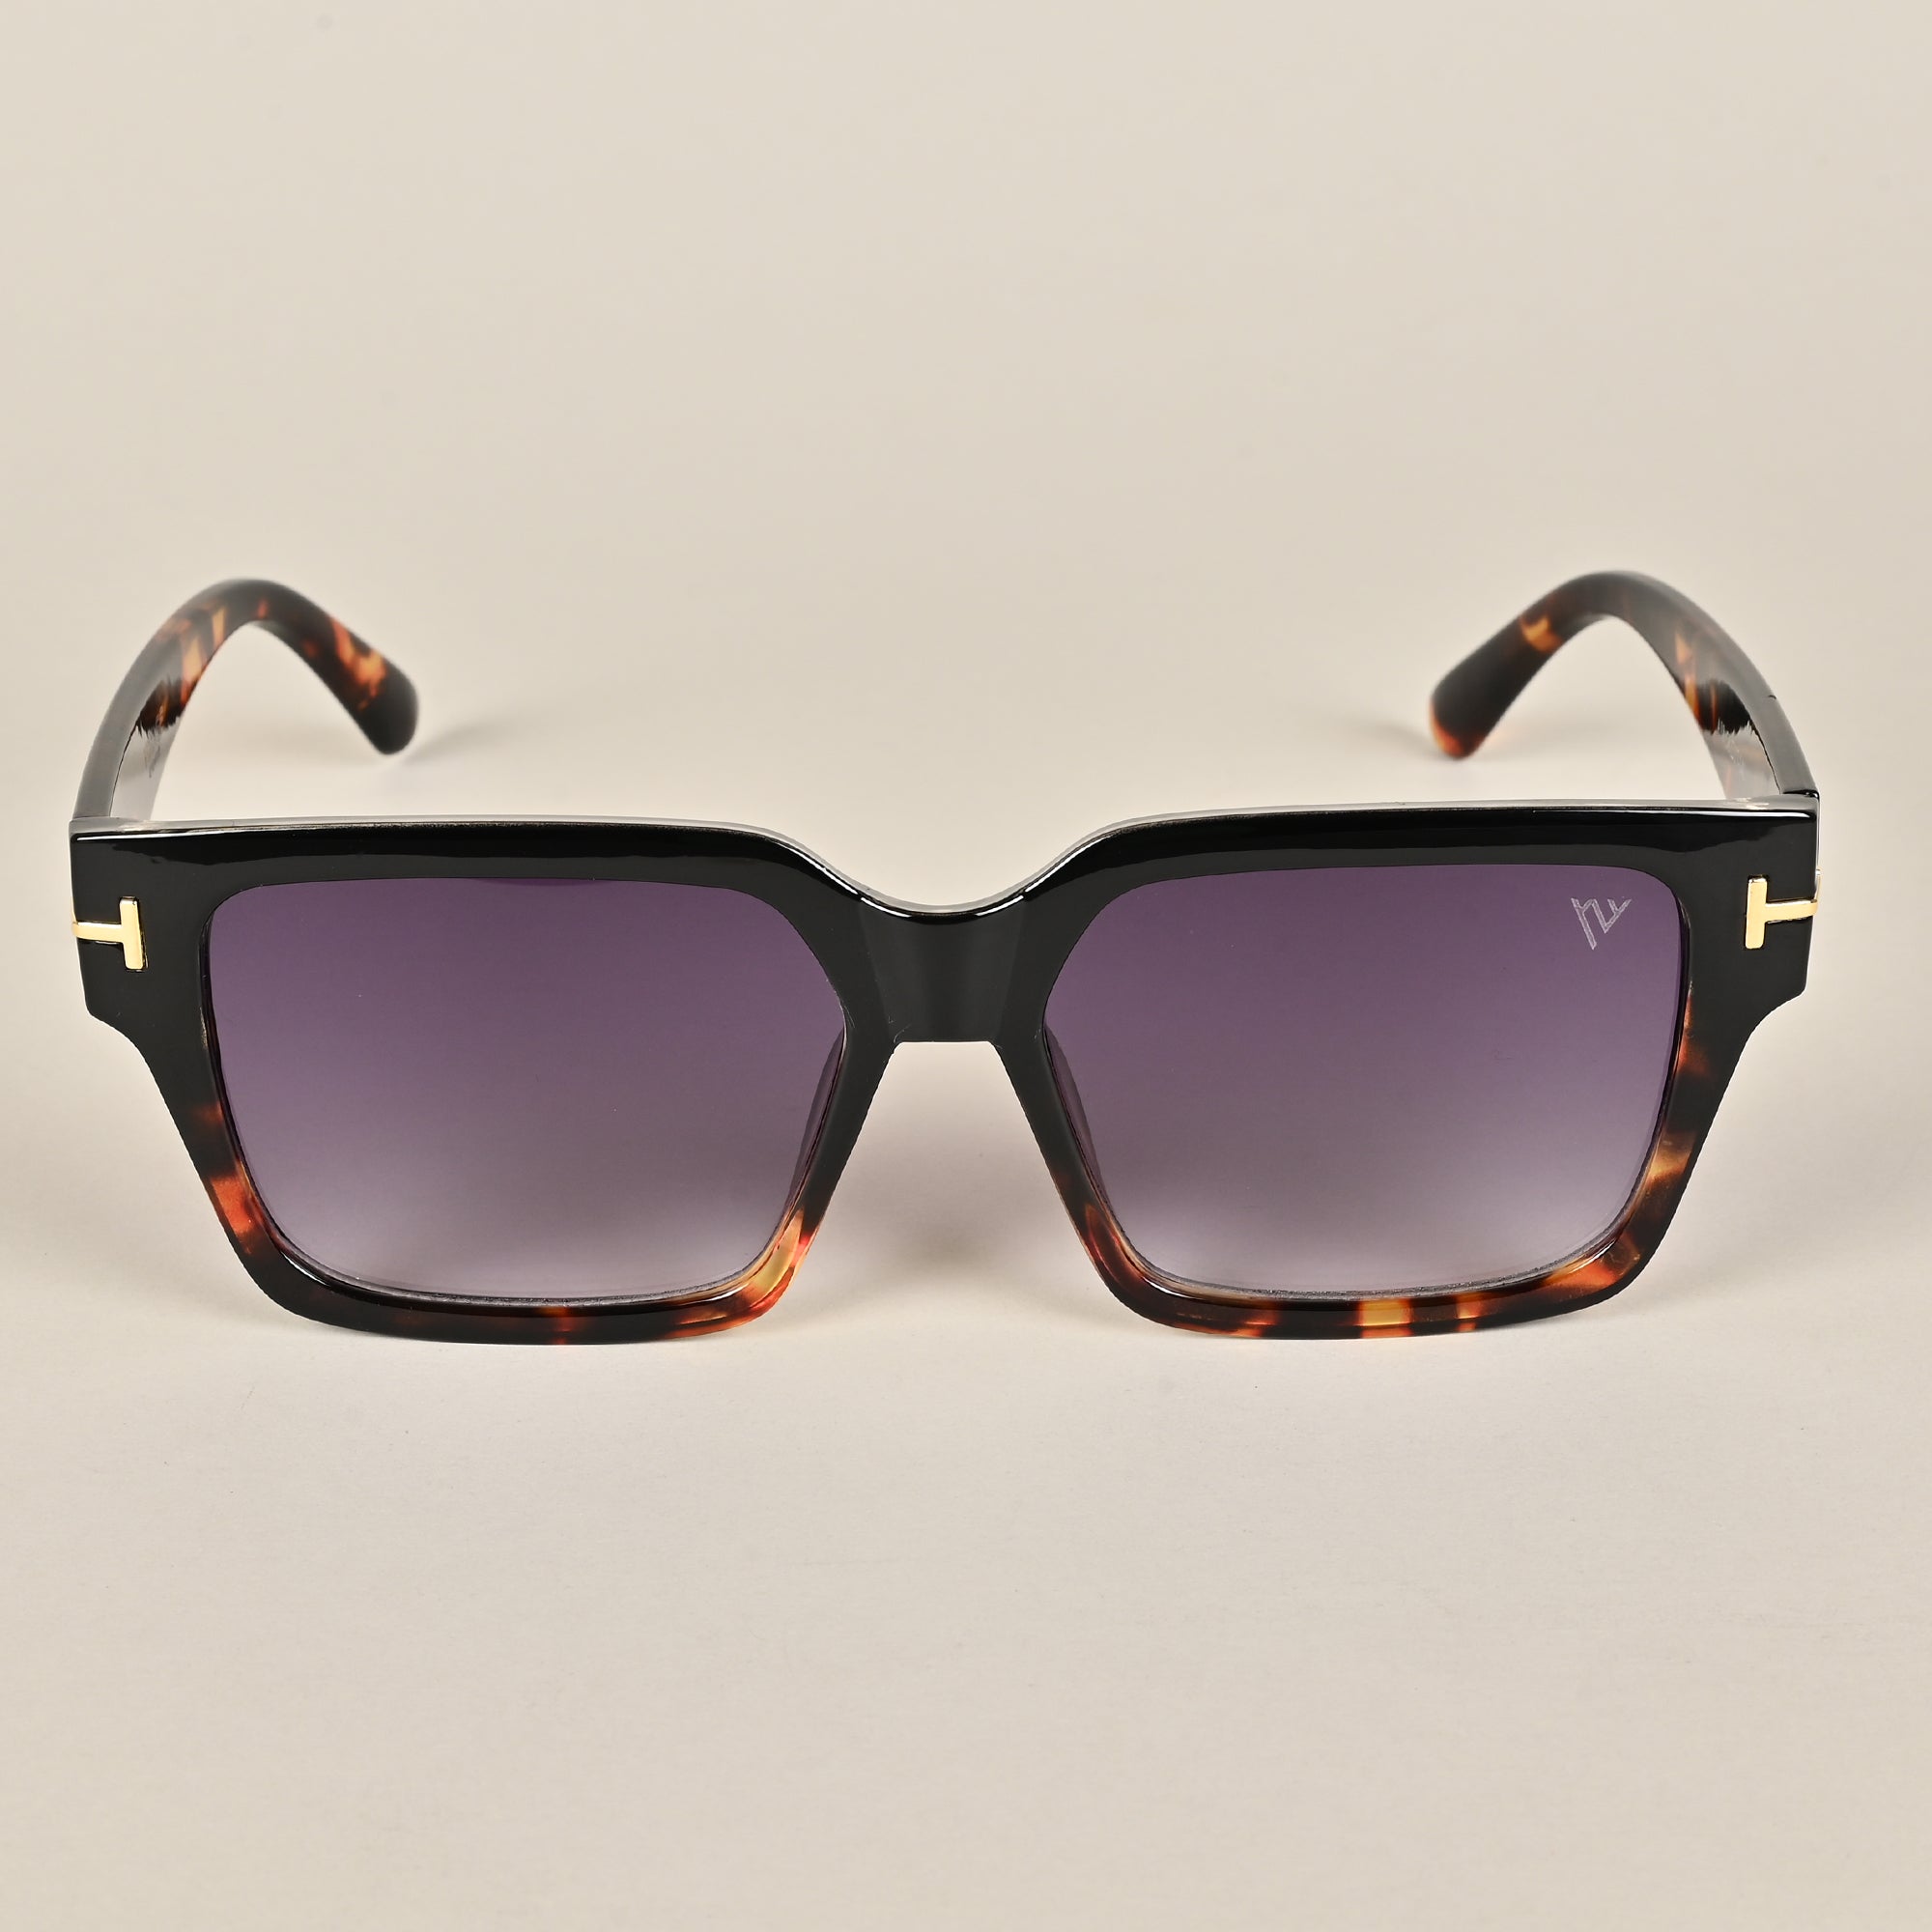 Voyage Black Wayfarer Sunglasses for Men & Women (A18MG3950)